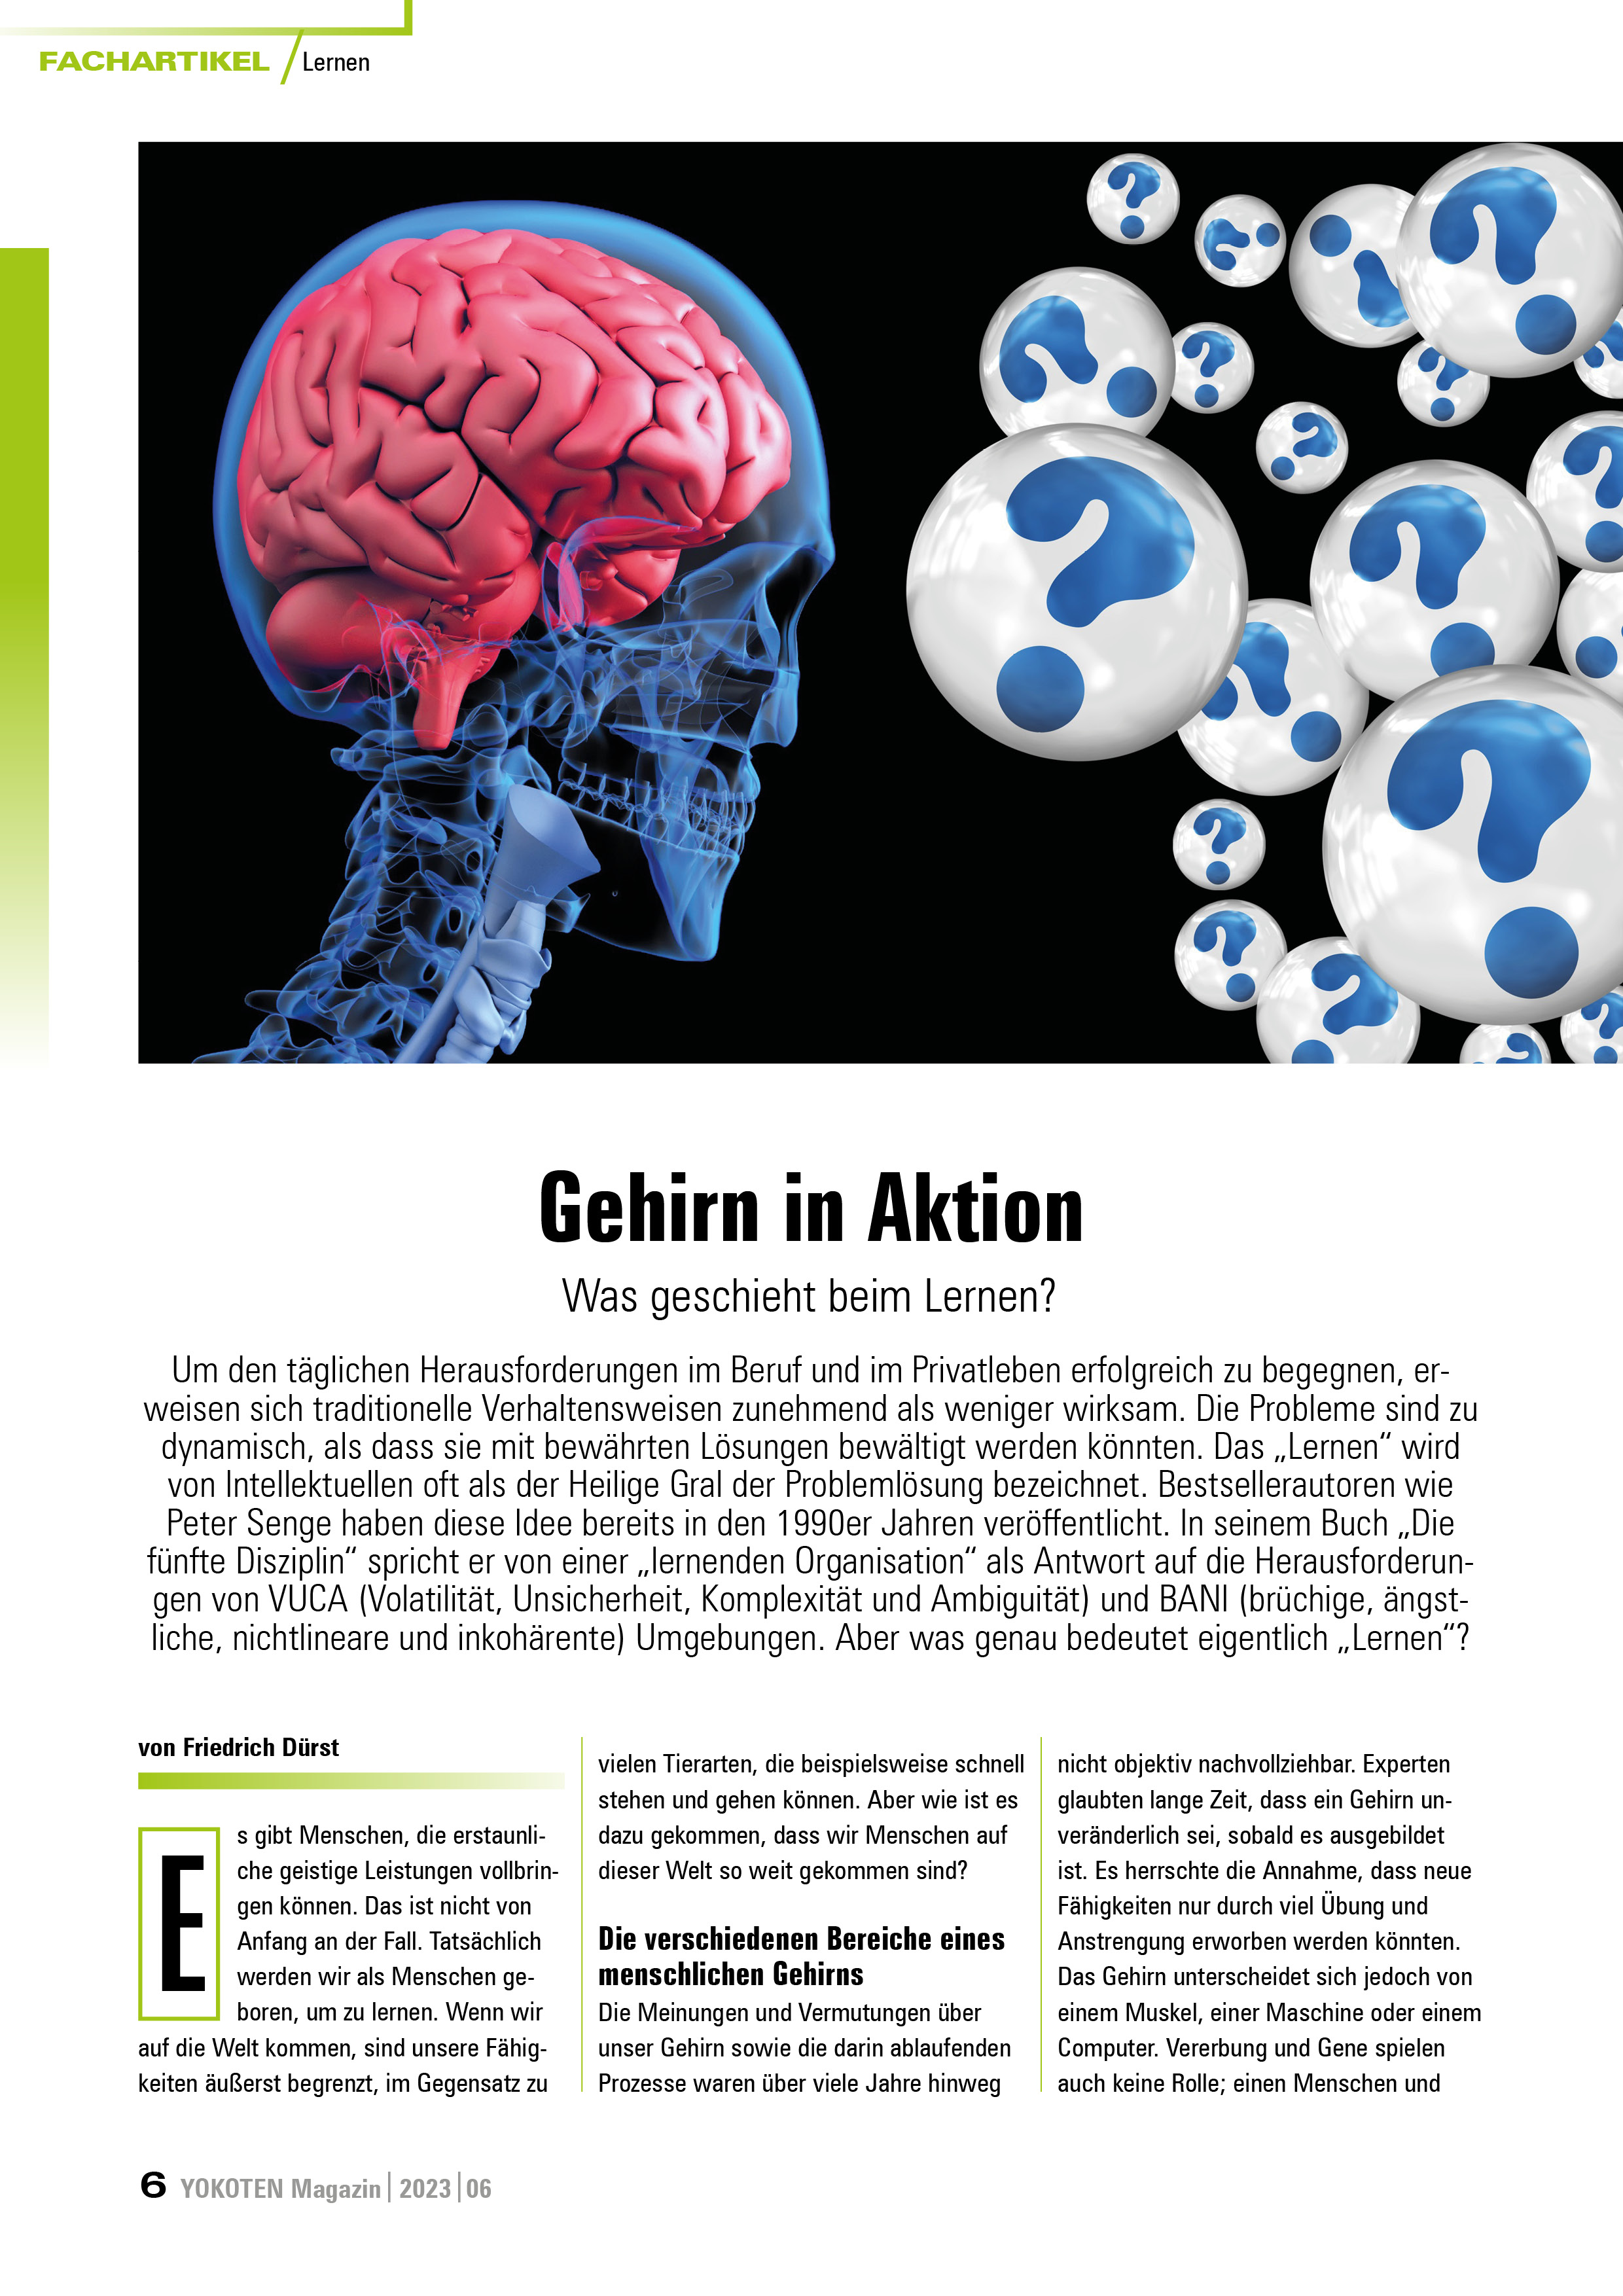 Gehirn in Aktion  - Artikel aus Fachmagazin YOKOTEN 2023-06